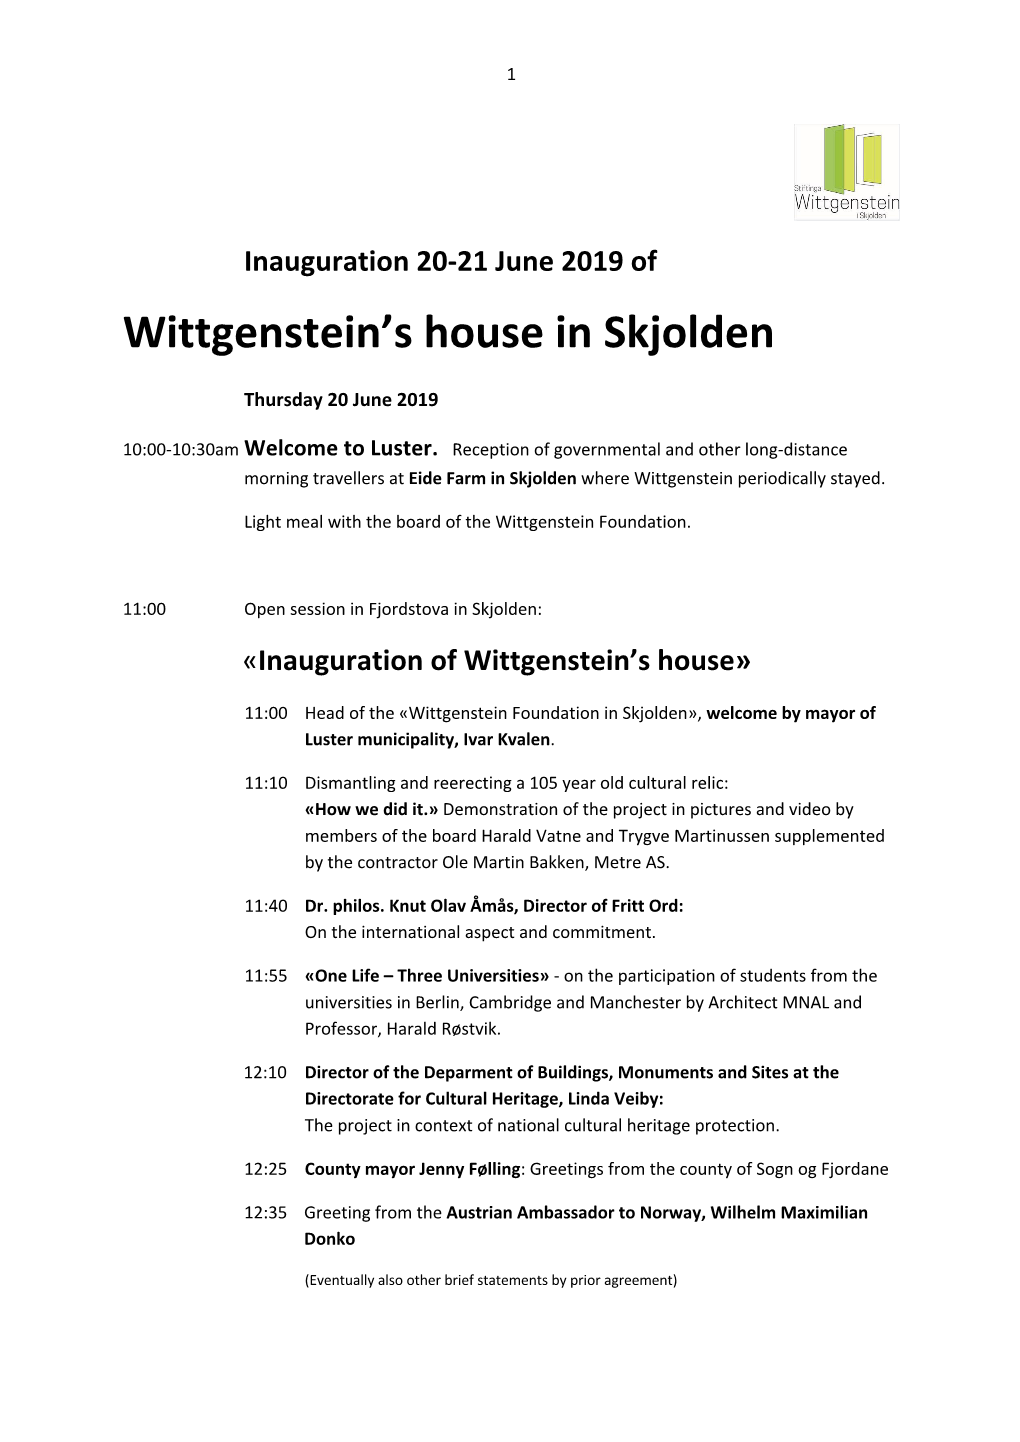 Wittgenstein's House in Skjolden